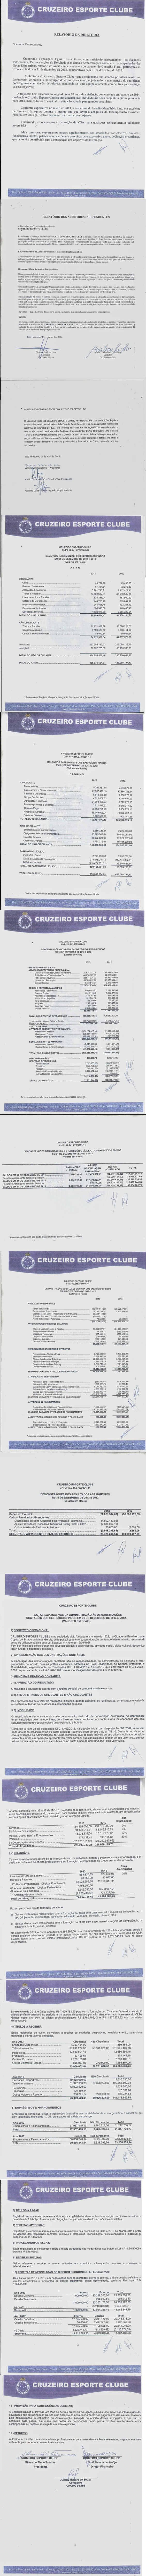 Balanço financeiro do Cruzeiro, em 2014 (Foto: Reprodução / Internet)